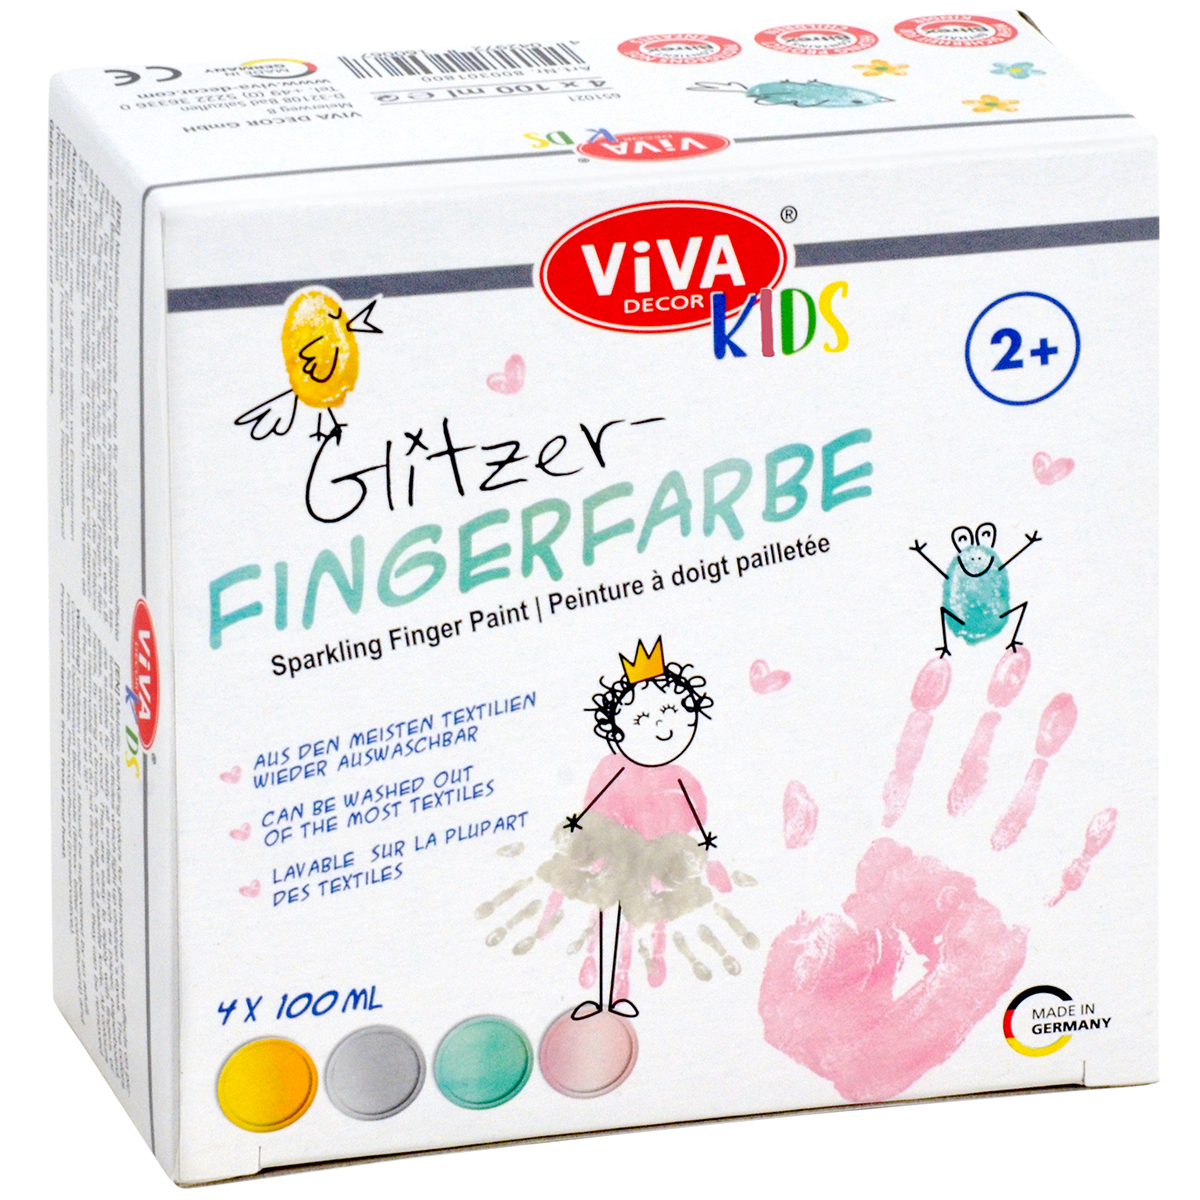 Viva Kids Glitzer Fingerfarbe, 4-teilig, 4 x 100ml